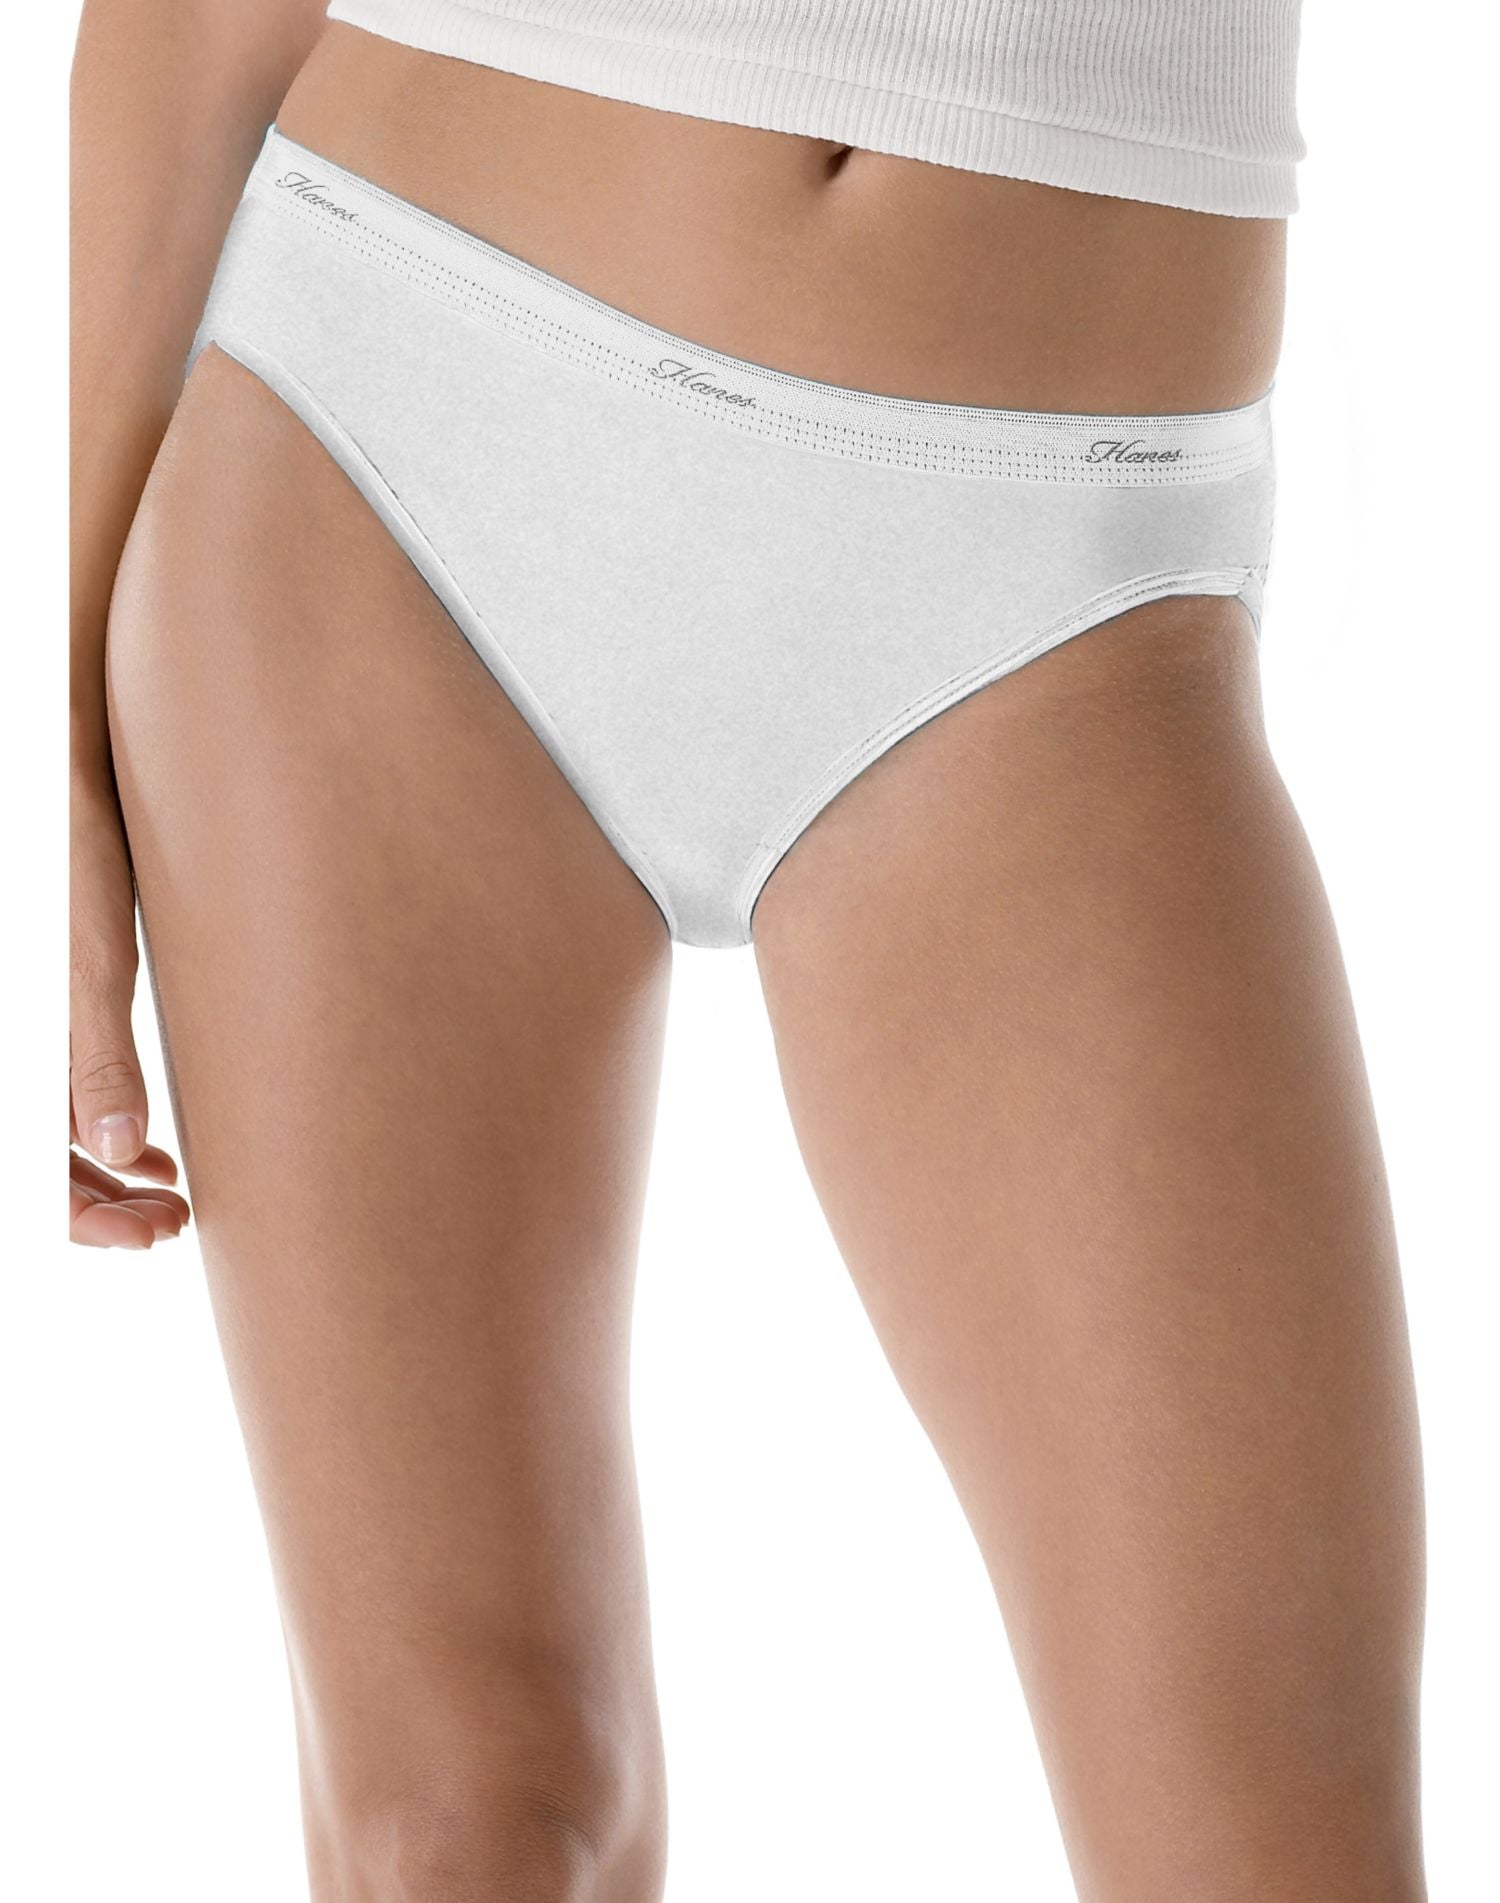 (NEW!) Vintage Hanes Her Way Underwear 1 Pair Bikini G024 White